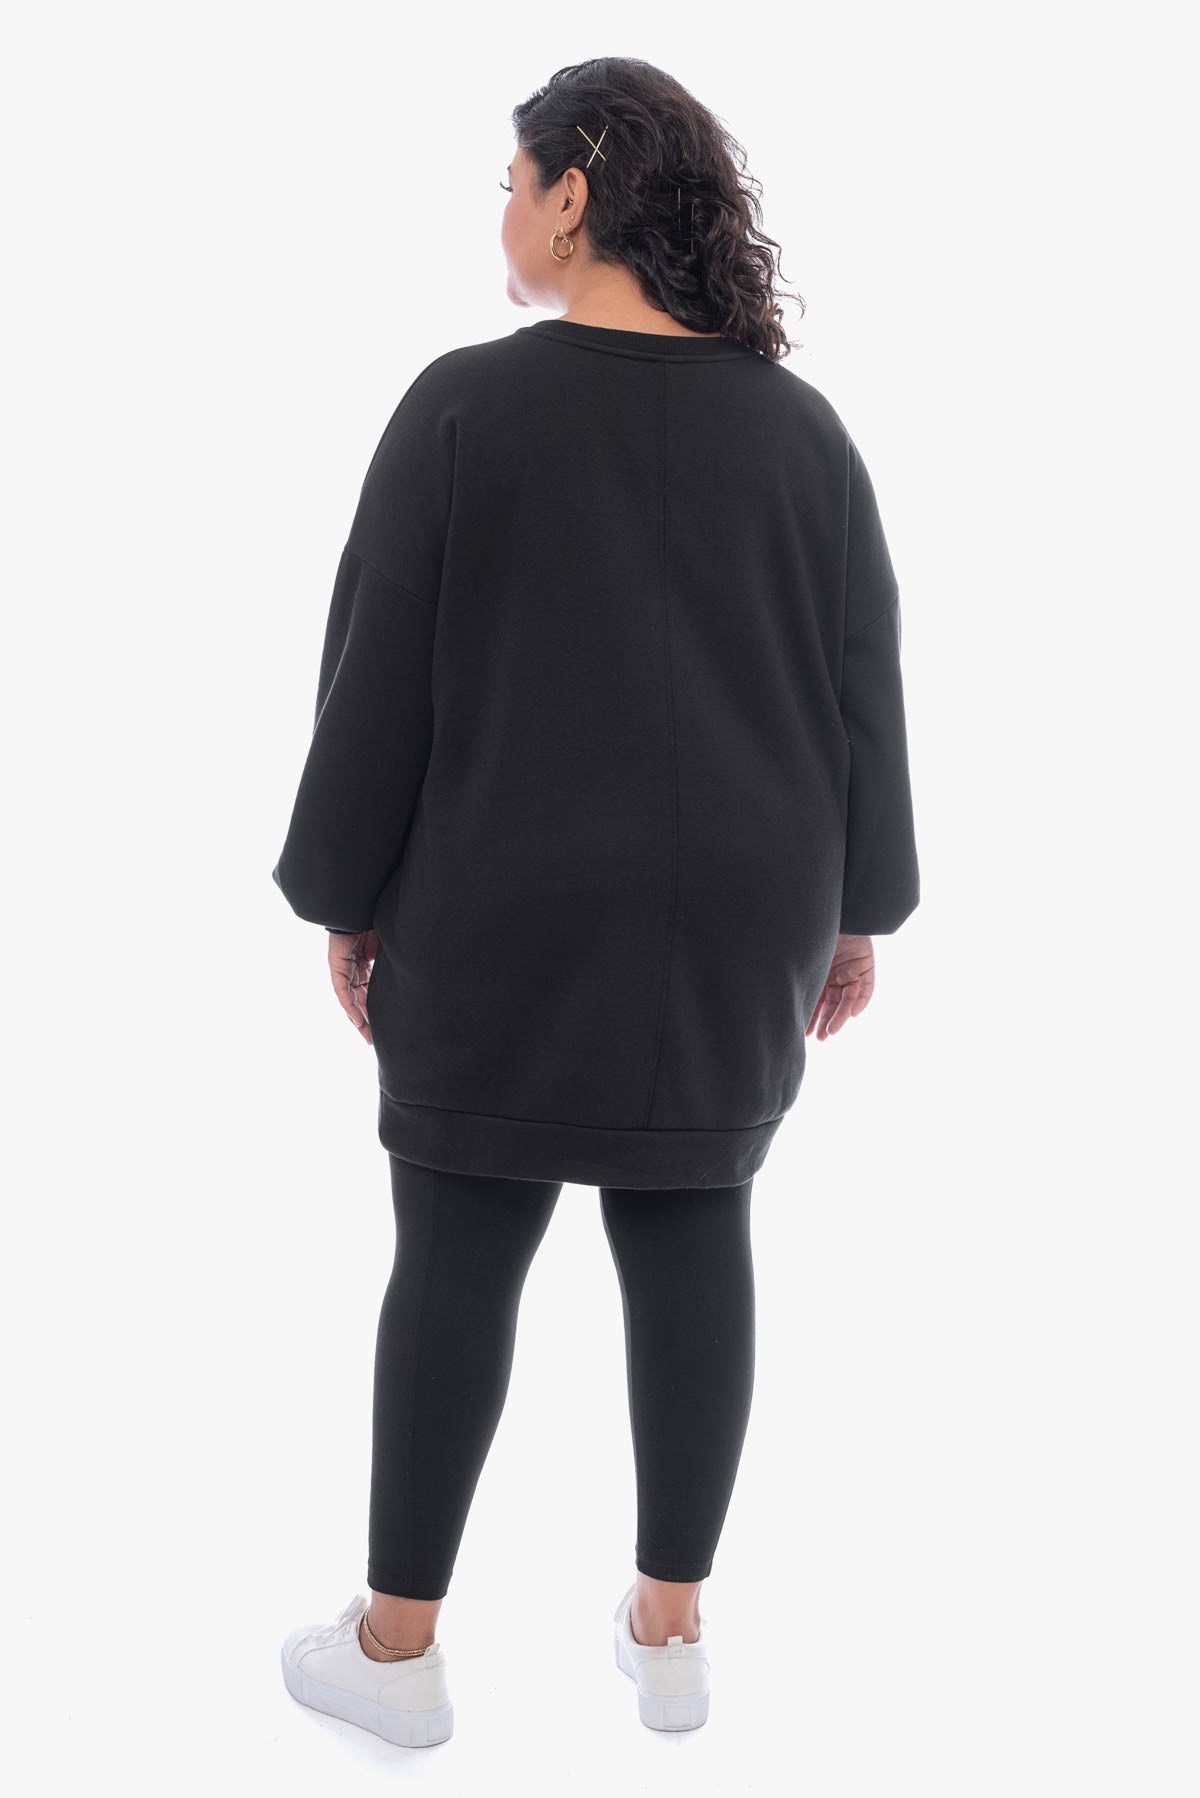 SUSANNE oversized sweatshirt